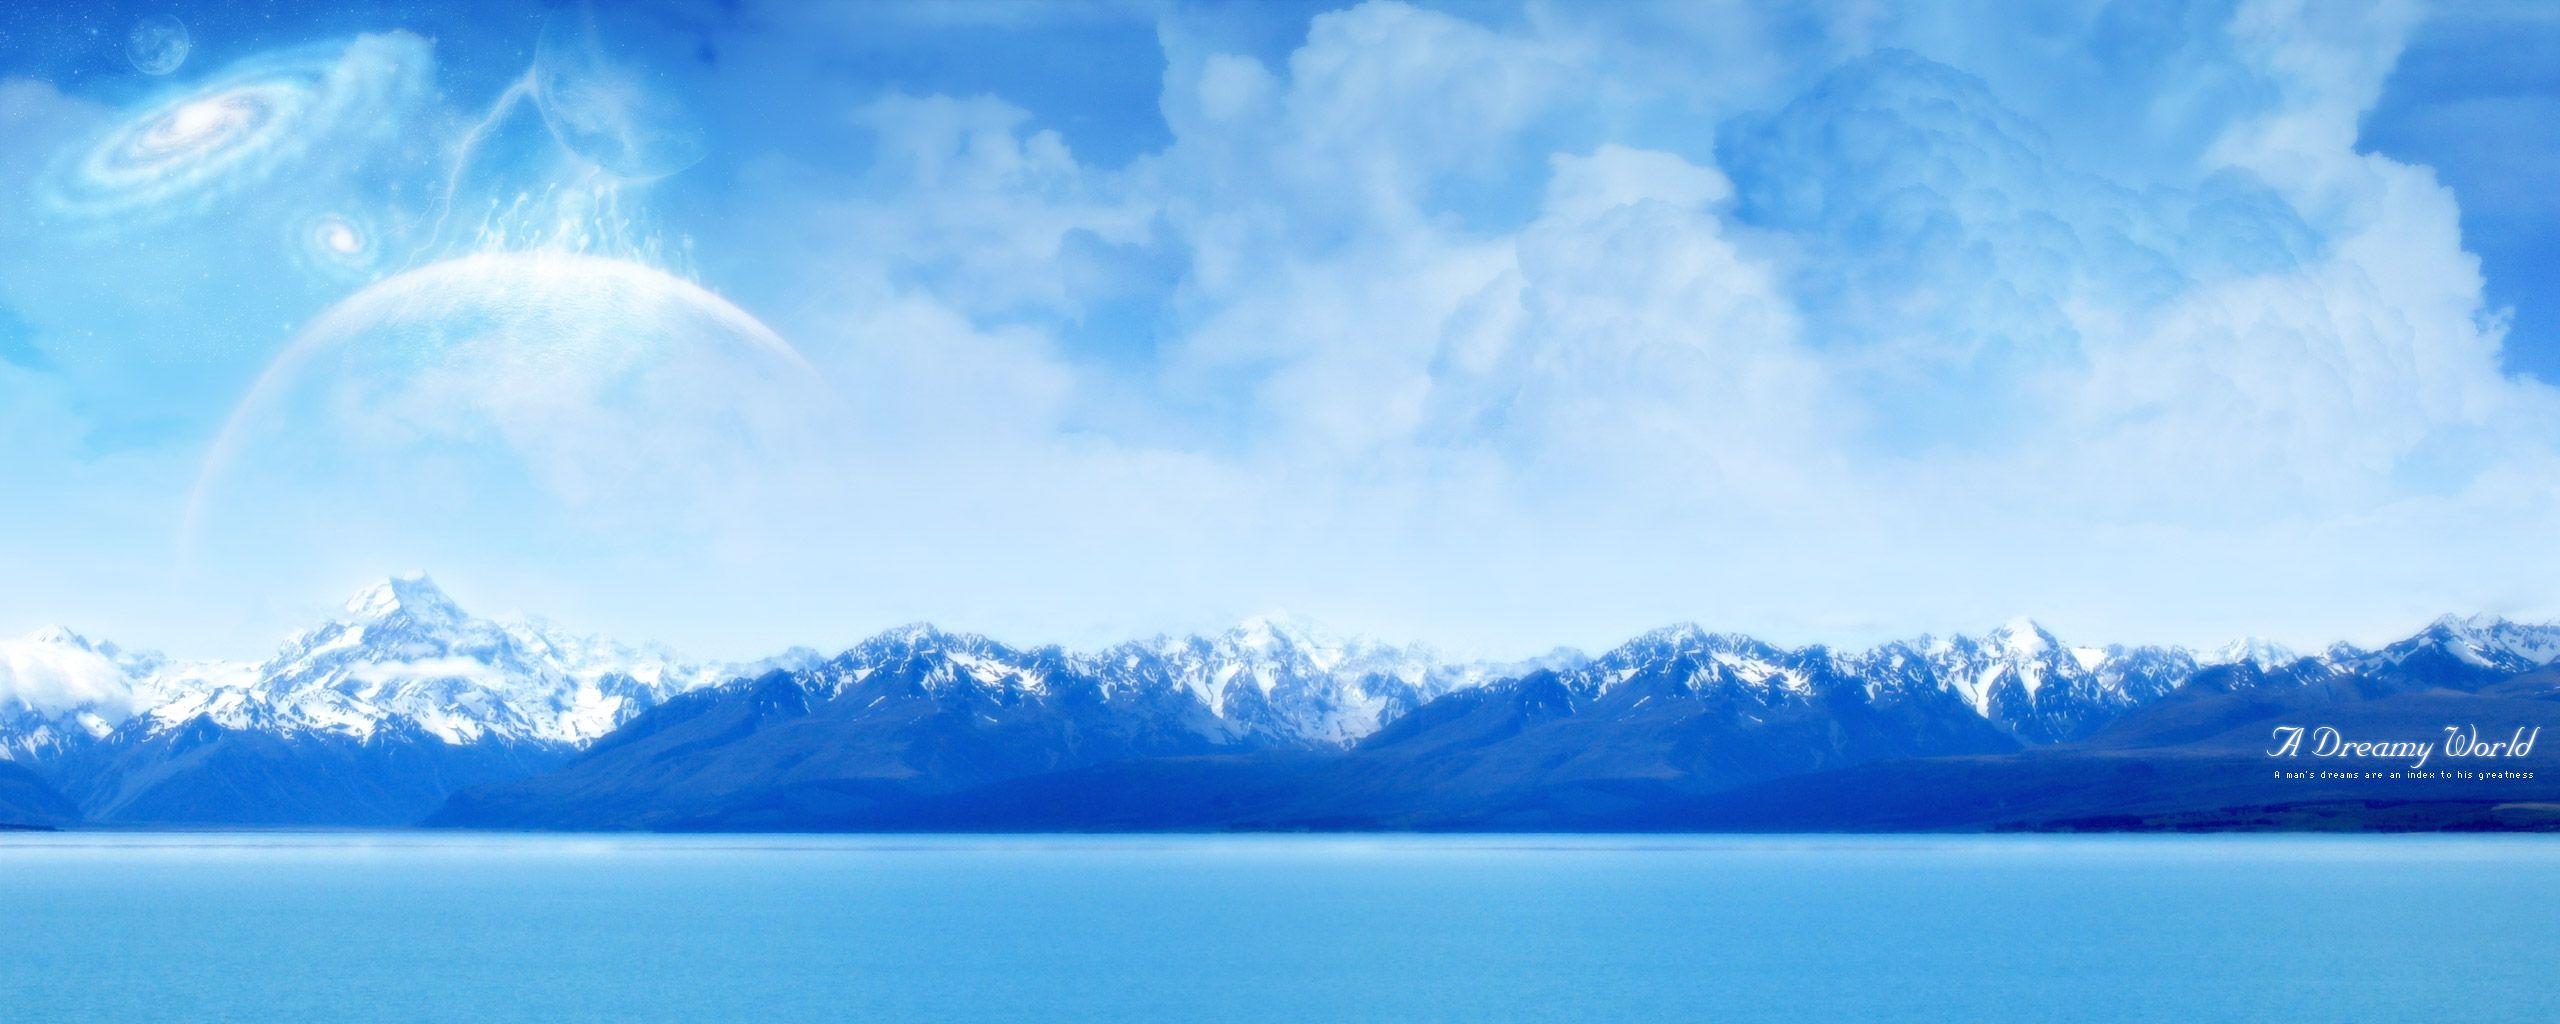 Download the Arctic Ocean Panorama Wallpaper, Arctic Ocean Panorama